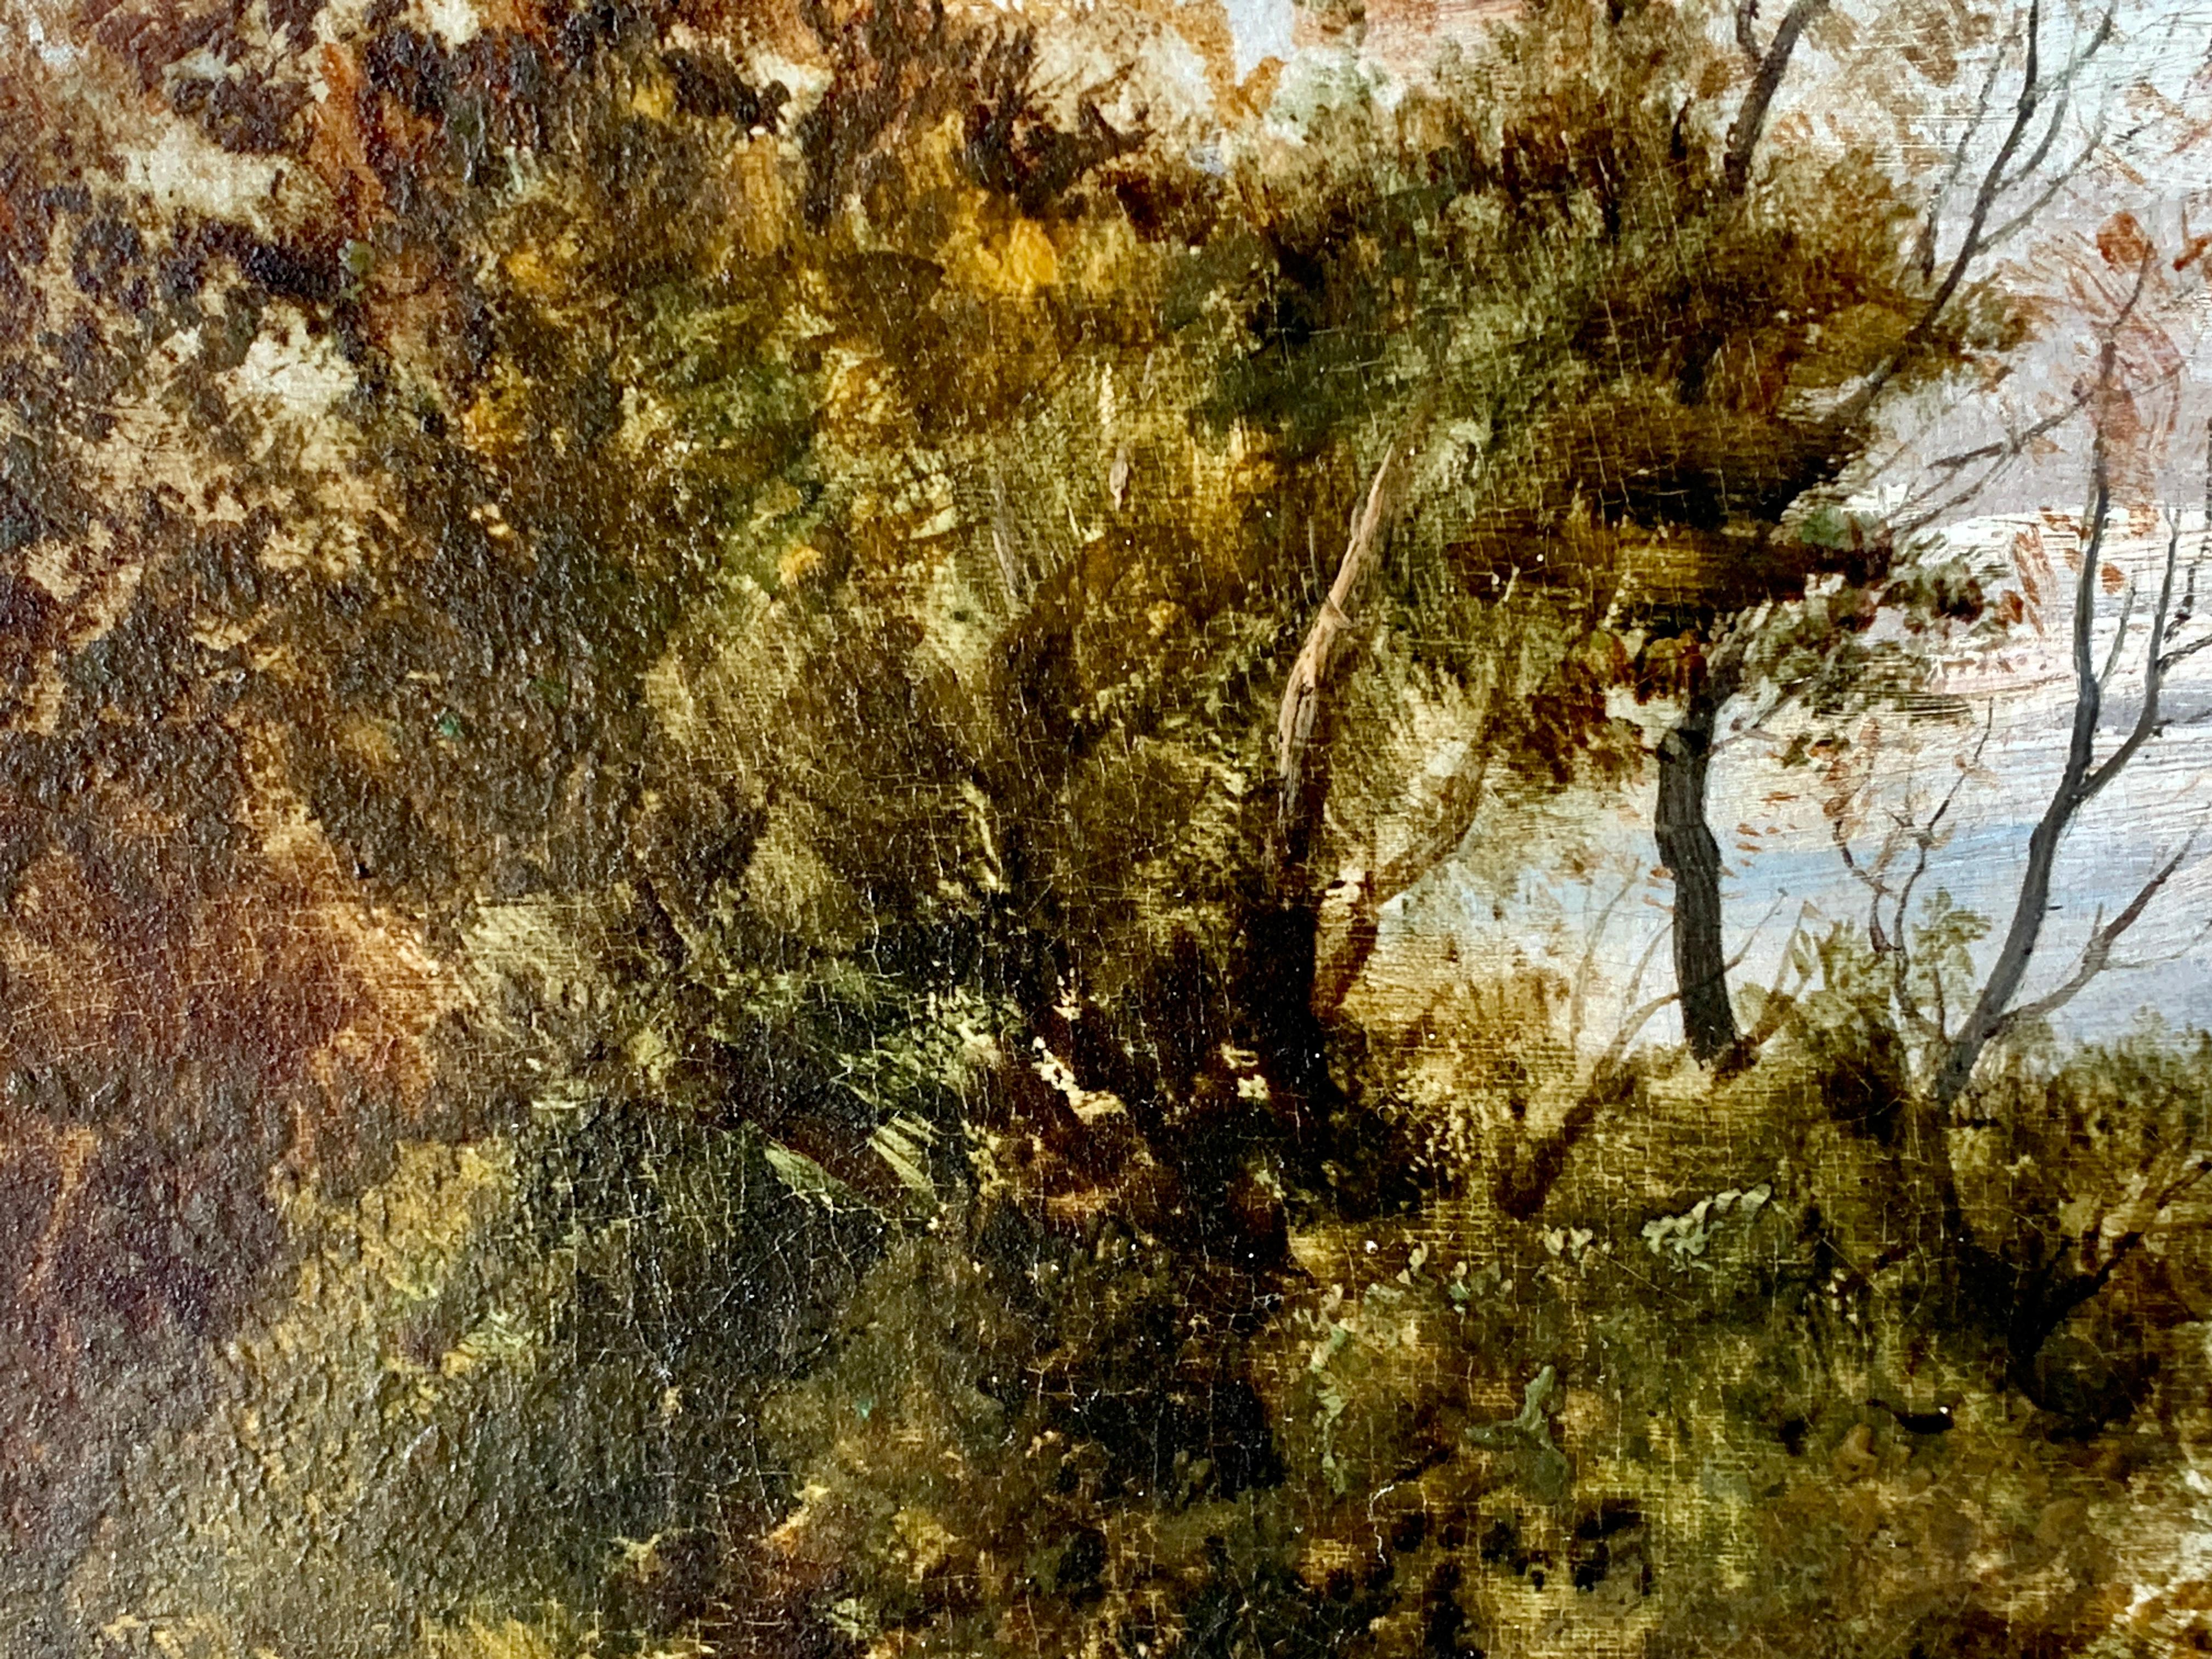 Merveilleux paysage d'automne anglais du XIXe siècle, avec un personnage sur un sentier passant devant quelques ormes ou chênes.

Cette œuvre est signée en bas à droite et est encadrée dans un cadre Vintage American Gold Leaf.

Le tableau est passé